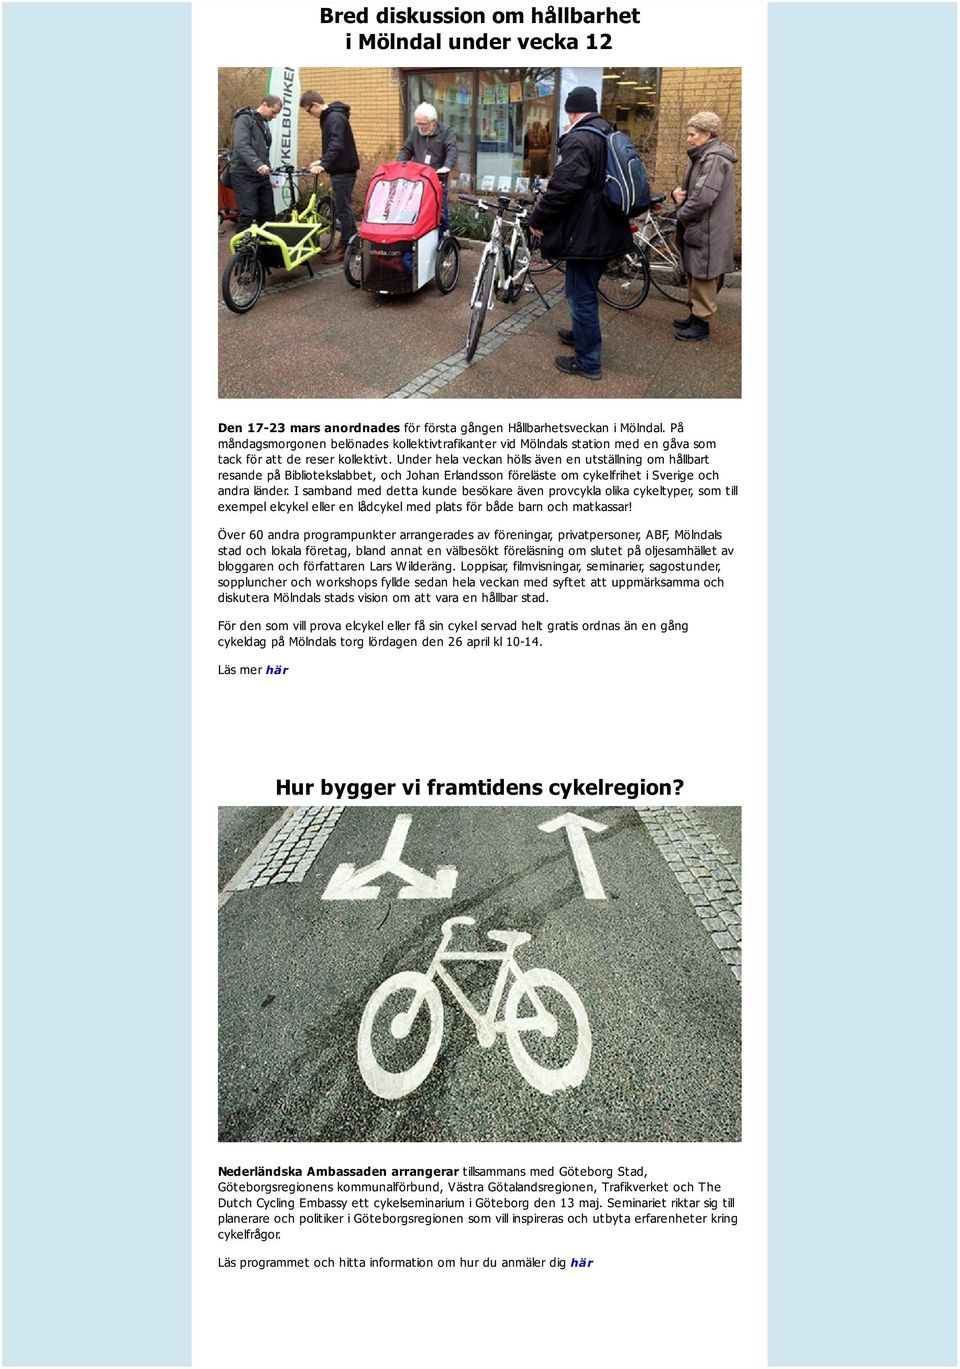 Under hela veckan hölls även en utställning om hållbart resande på Bibliotekslabbet, och Johan Erlandsson föreläste om cykelfrihet i Sverige och andra länder.